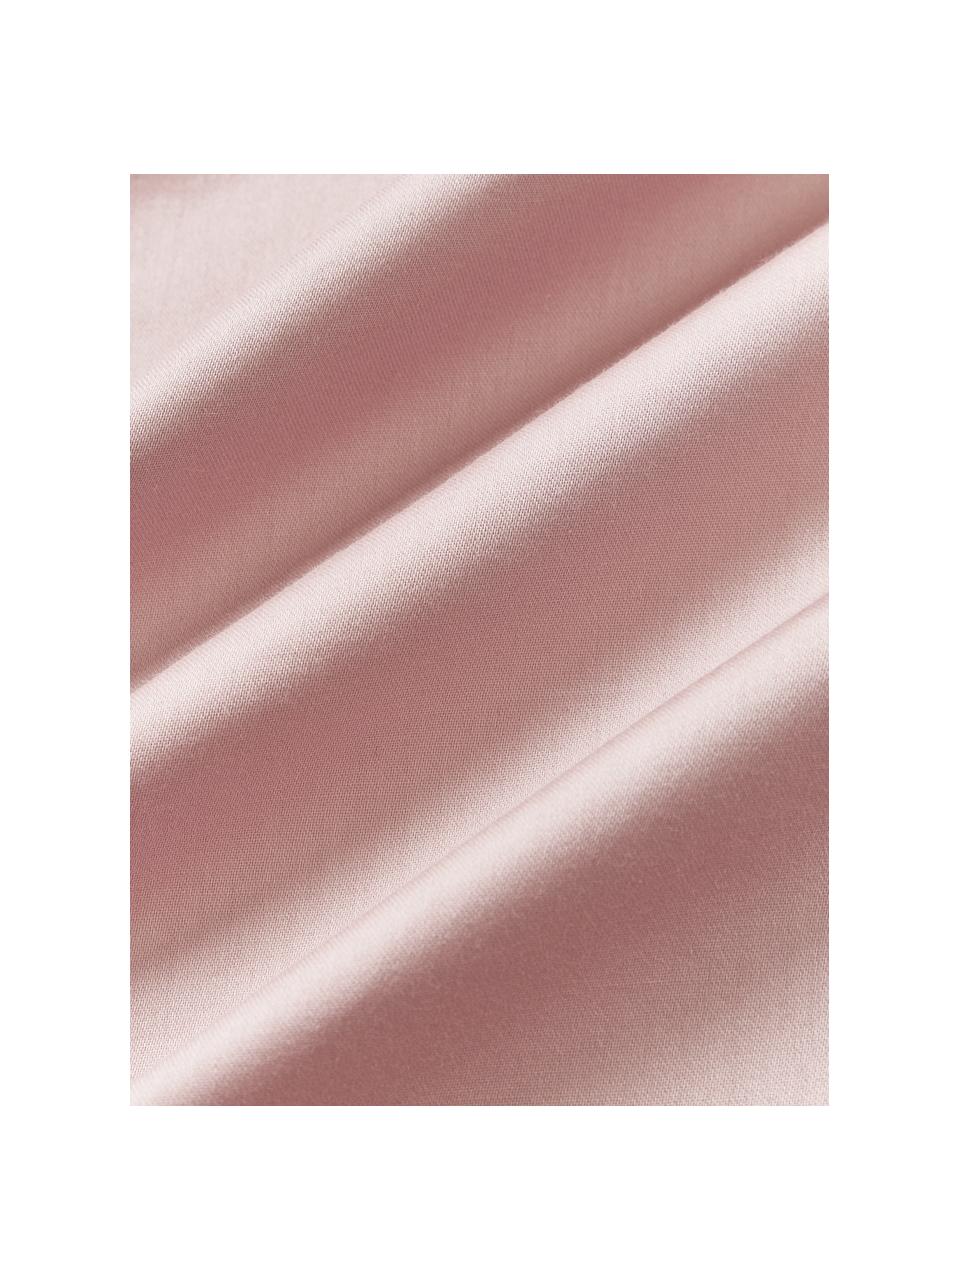 Poszwa na kołdrę z satyny bawełnianej Comfort, Blady różowy, S 200 x D 200 cm